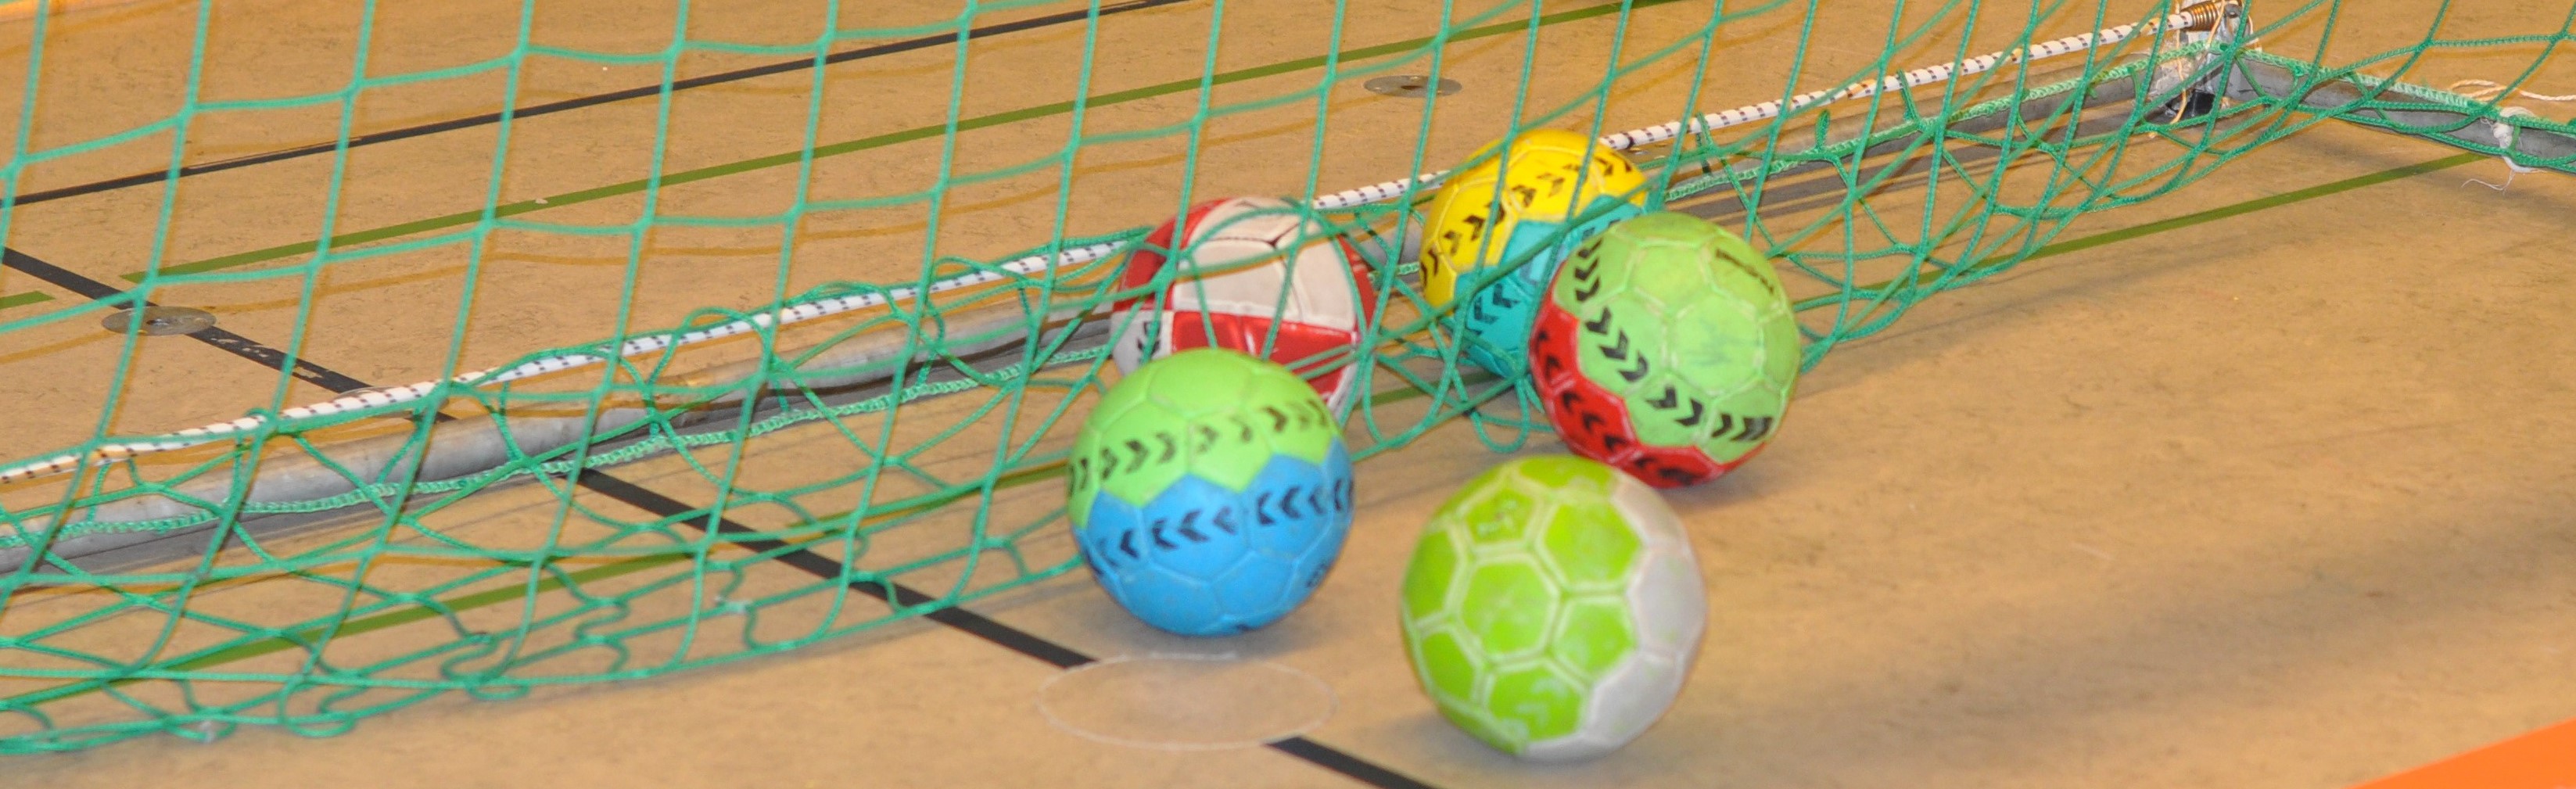 Handball Motiv2 SL